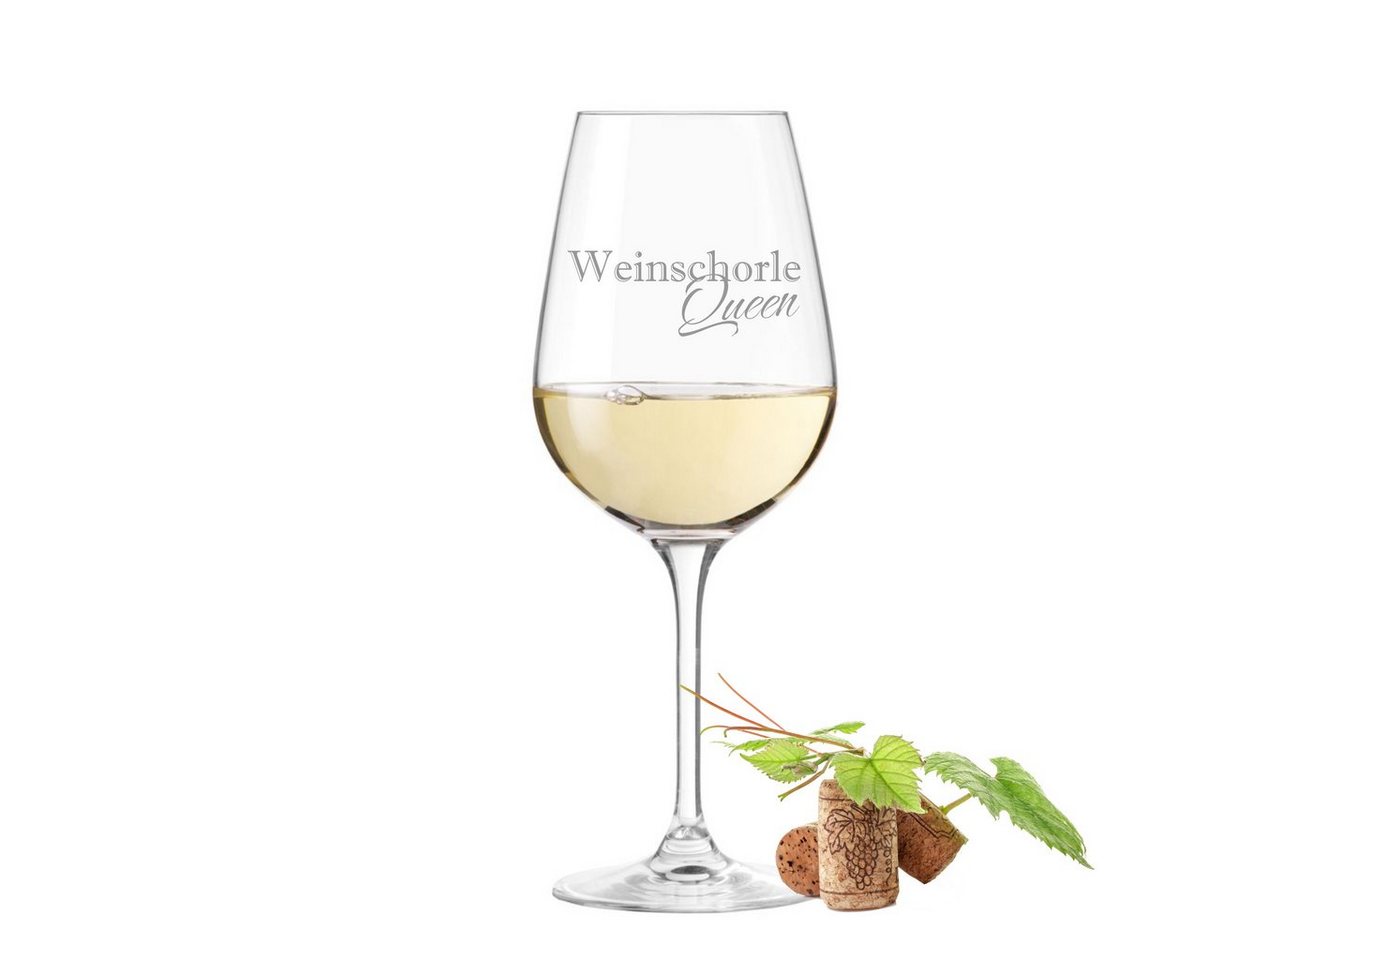 KS Laserdesign Weinglas Leonardo mit Gravur - Weinschorle Queen - Geschenkidee, Glas, Lasergravur von KS Laserdesign